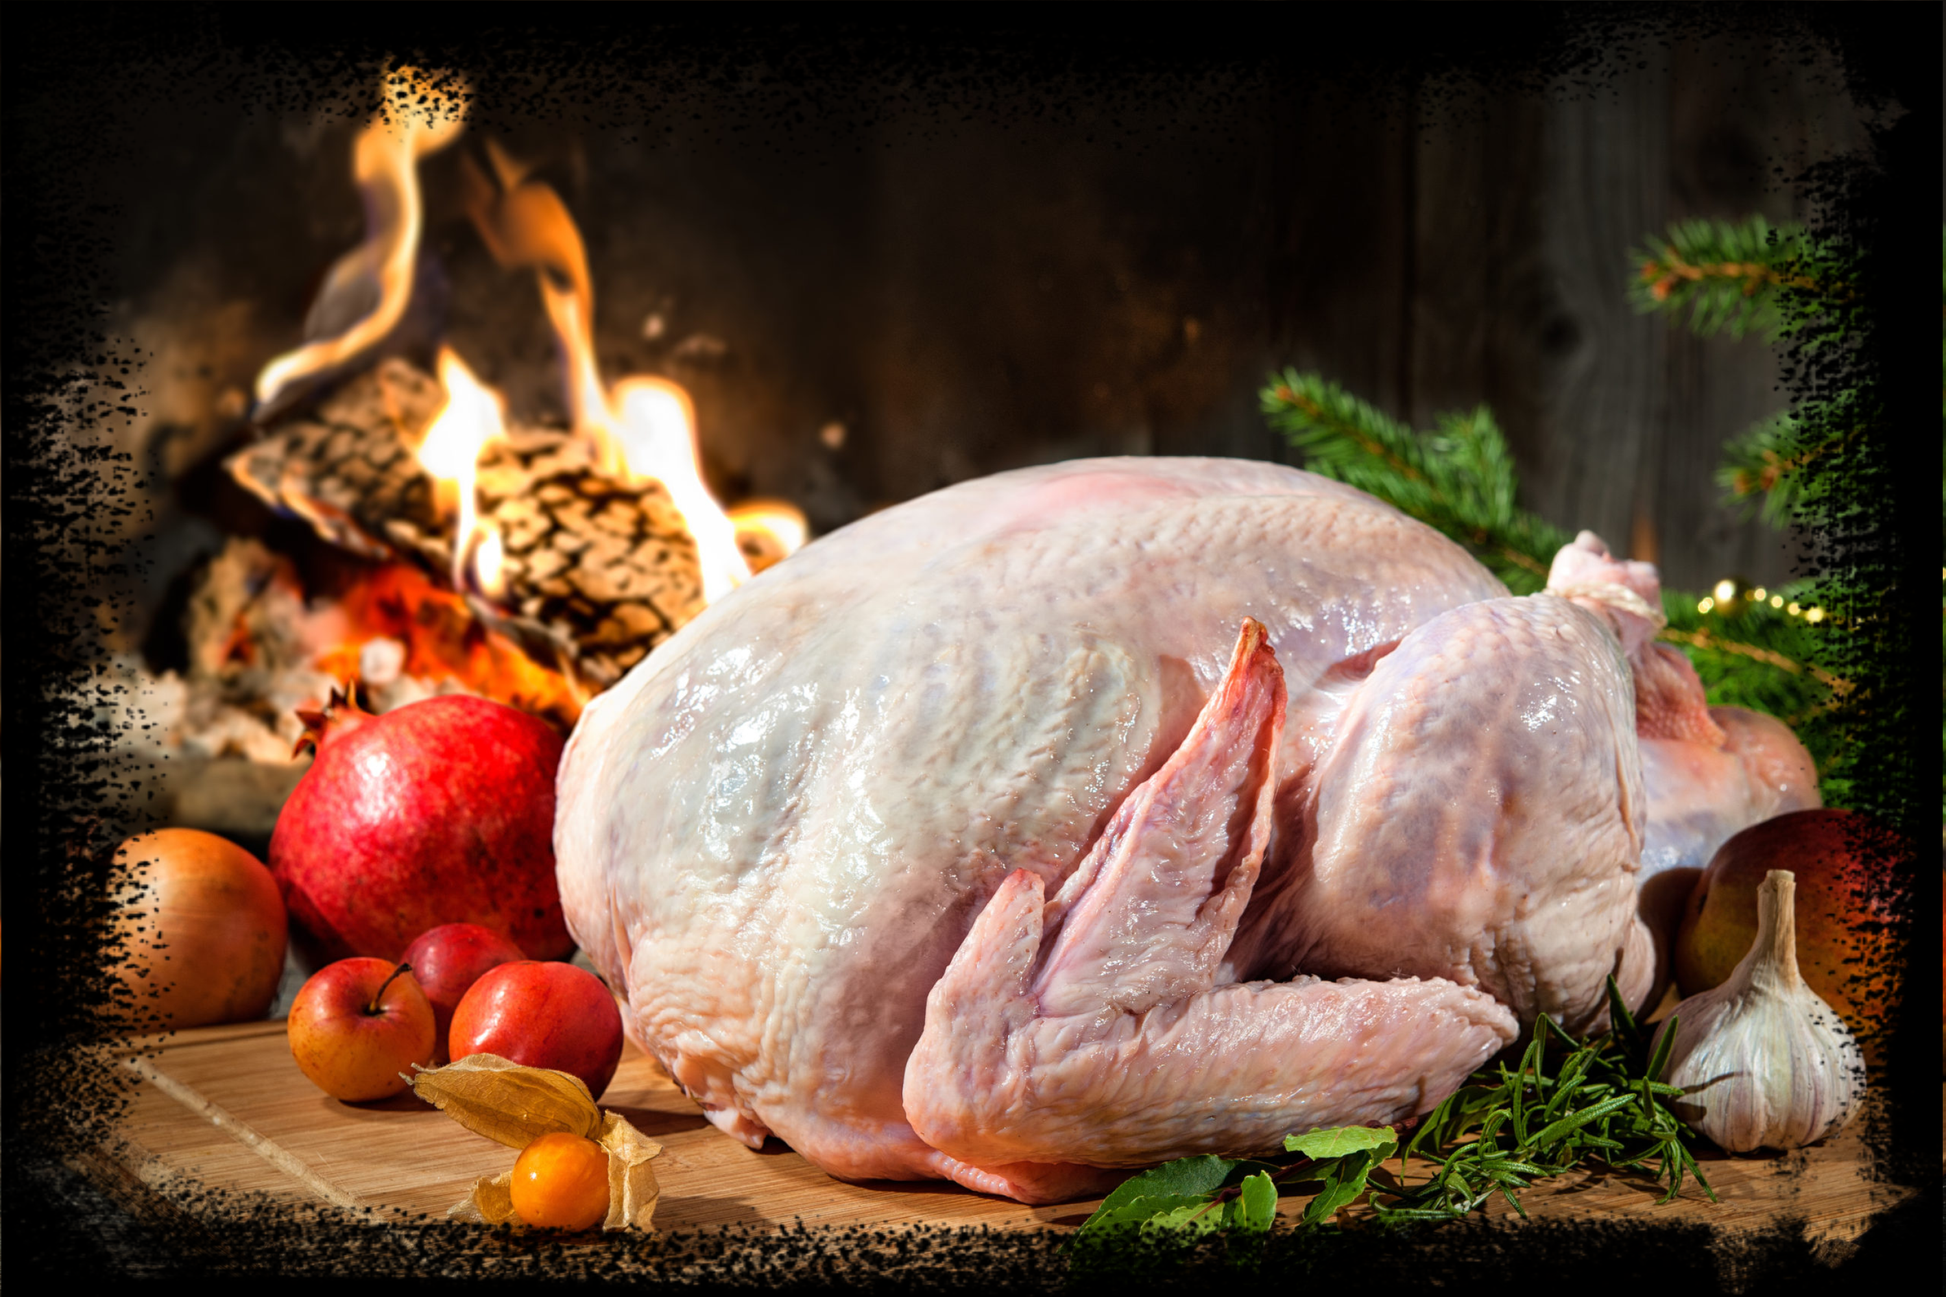 Whole Turkey (25.90/kg) - Frozen